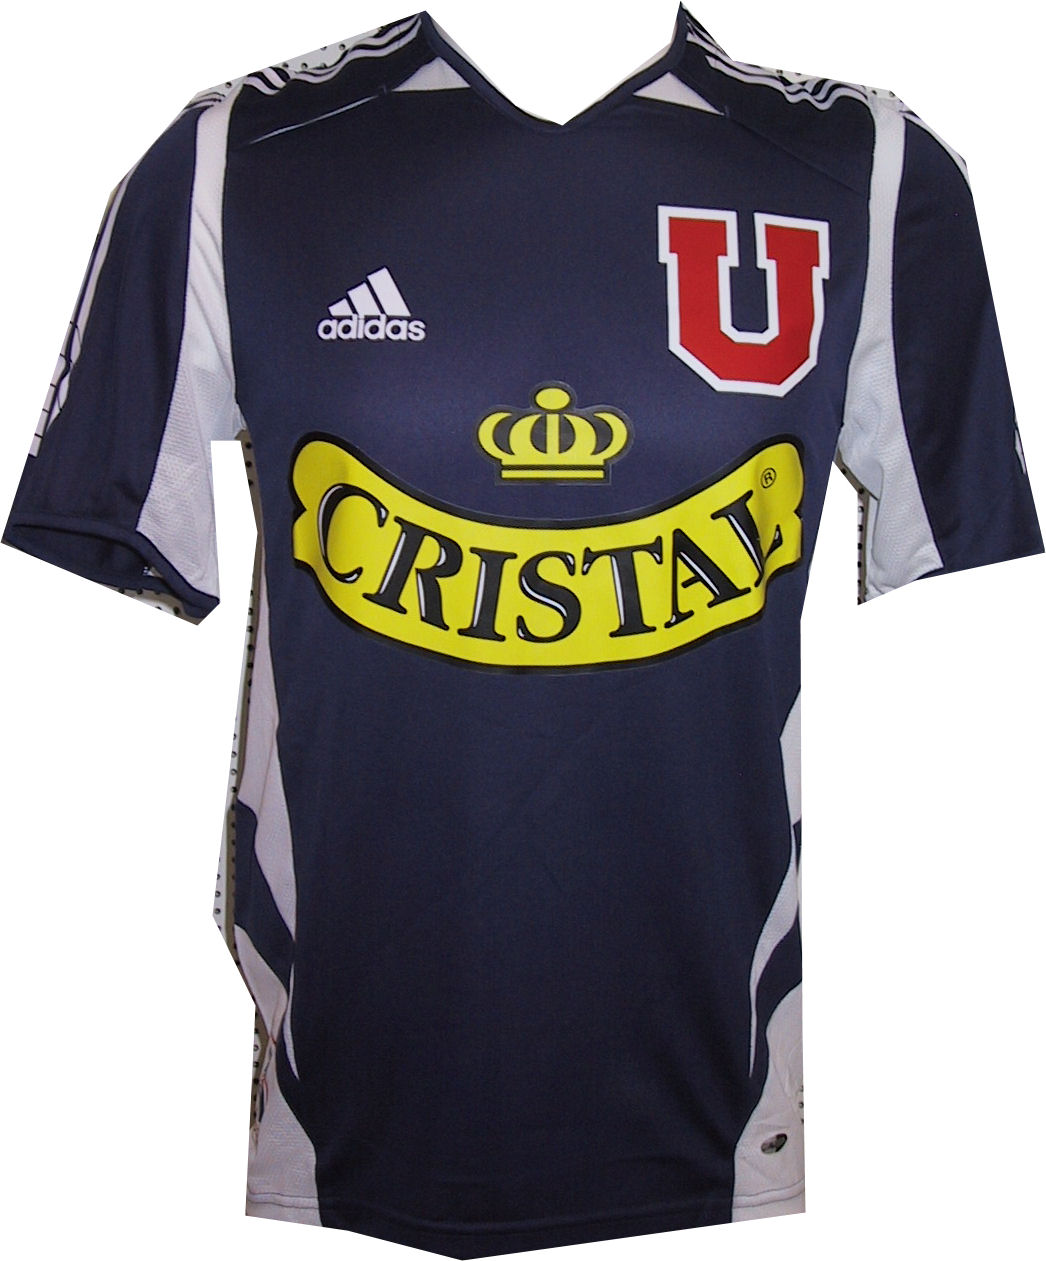 Adidas Universidad de Chile home 2005